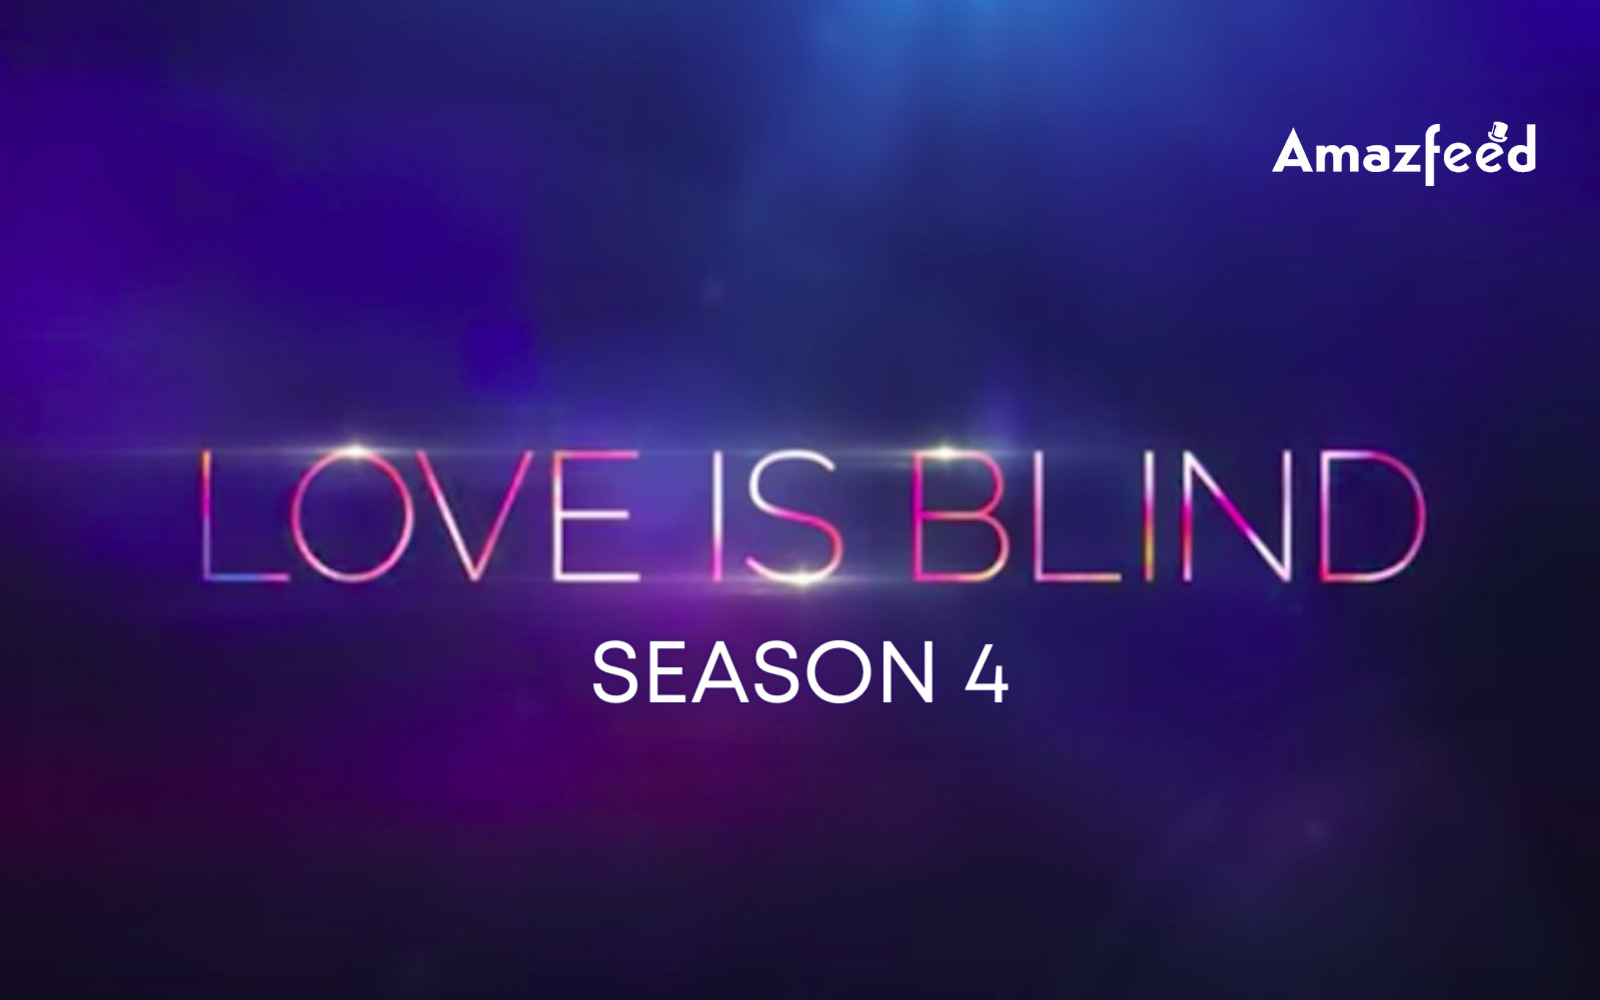 Love Is Blind Season 4.1